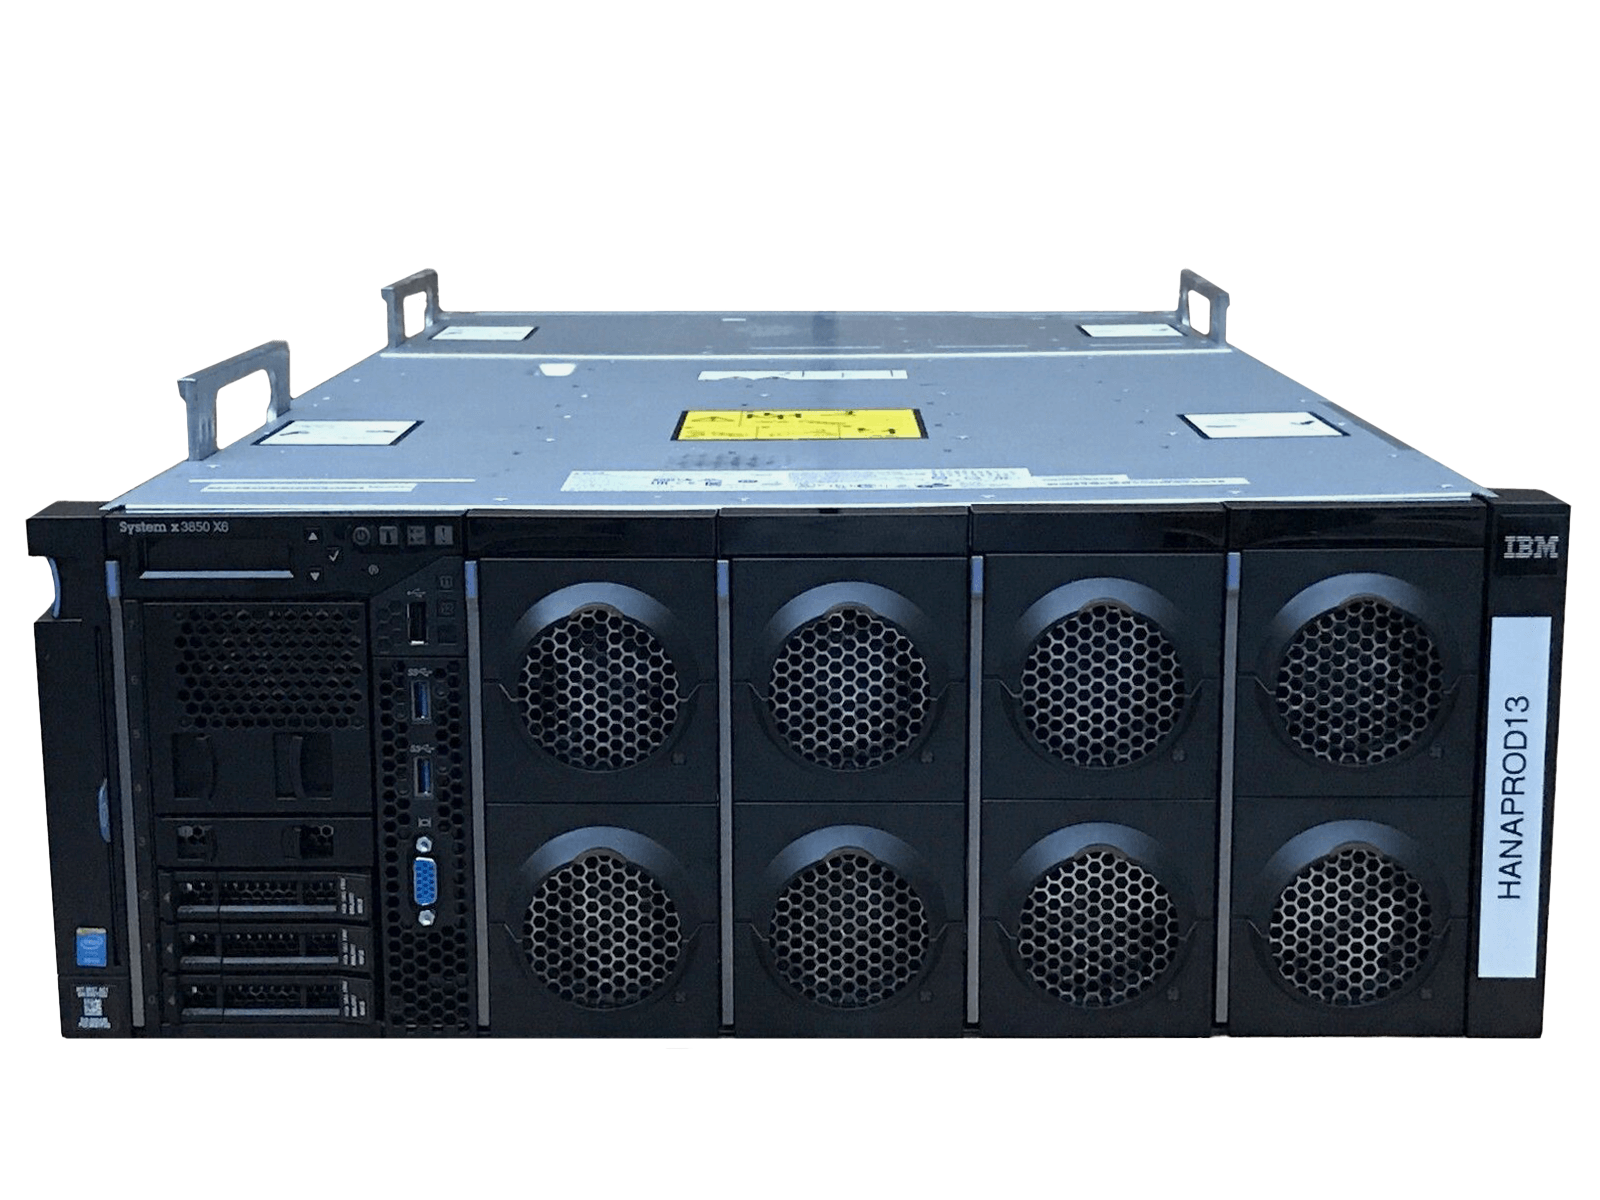 IBM x3850 X6 Server 4x Xeon E7-8893 v3 1536GB DDR4 RAM 3x 300GB 15K 4x 1400W PSU